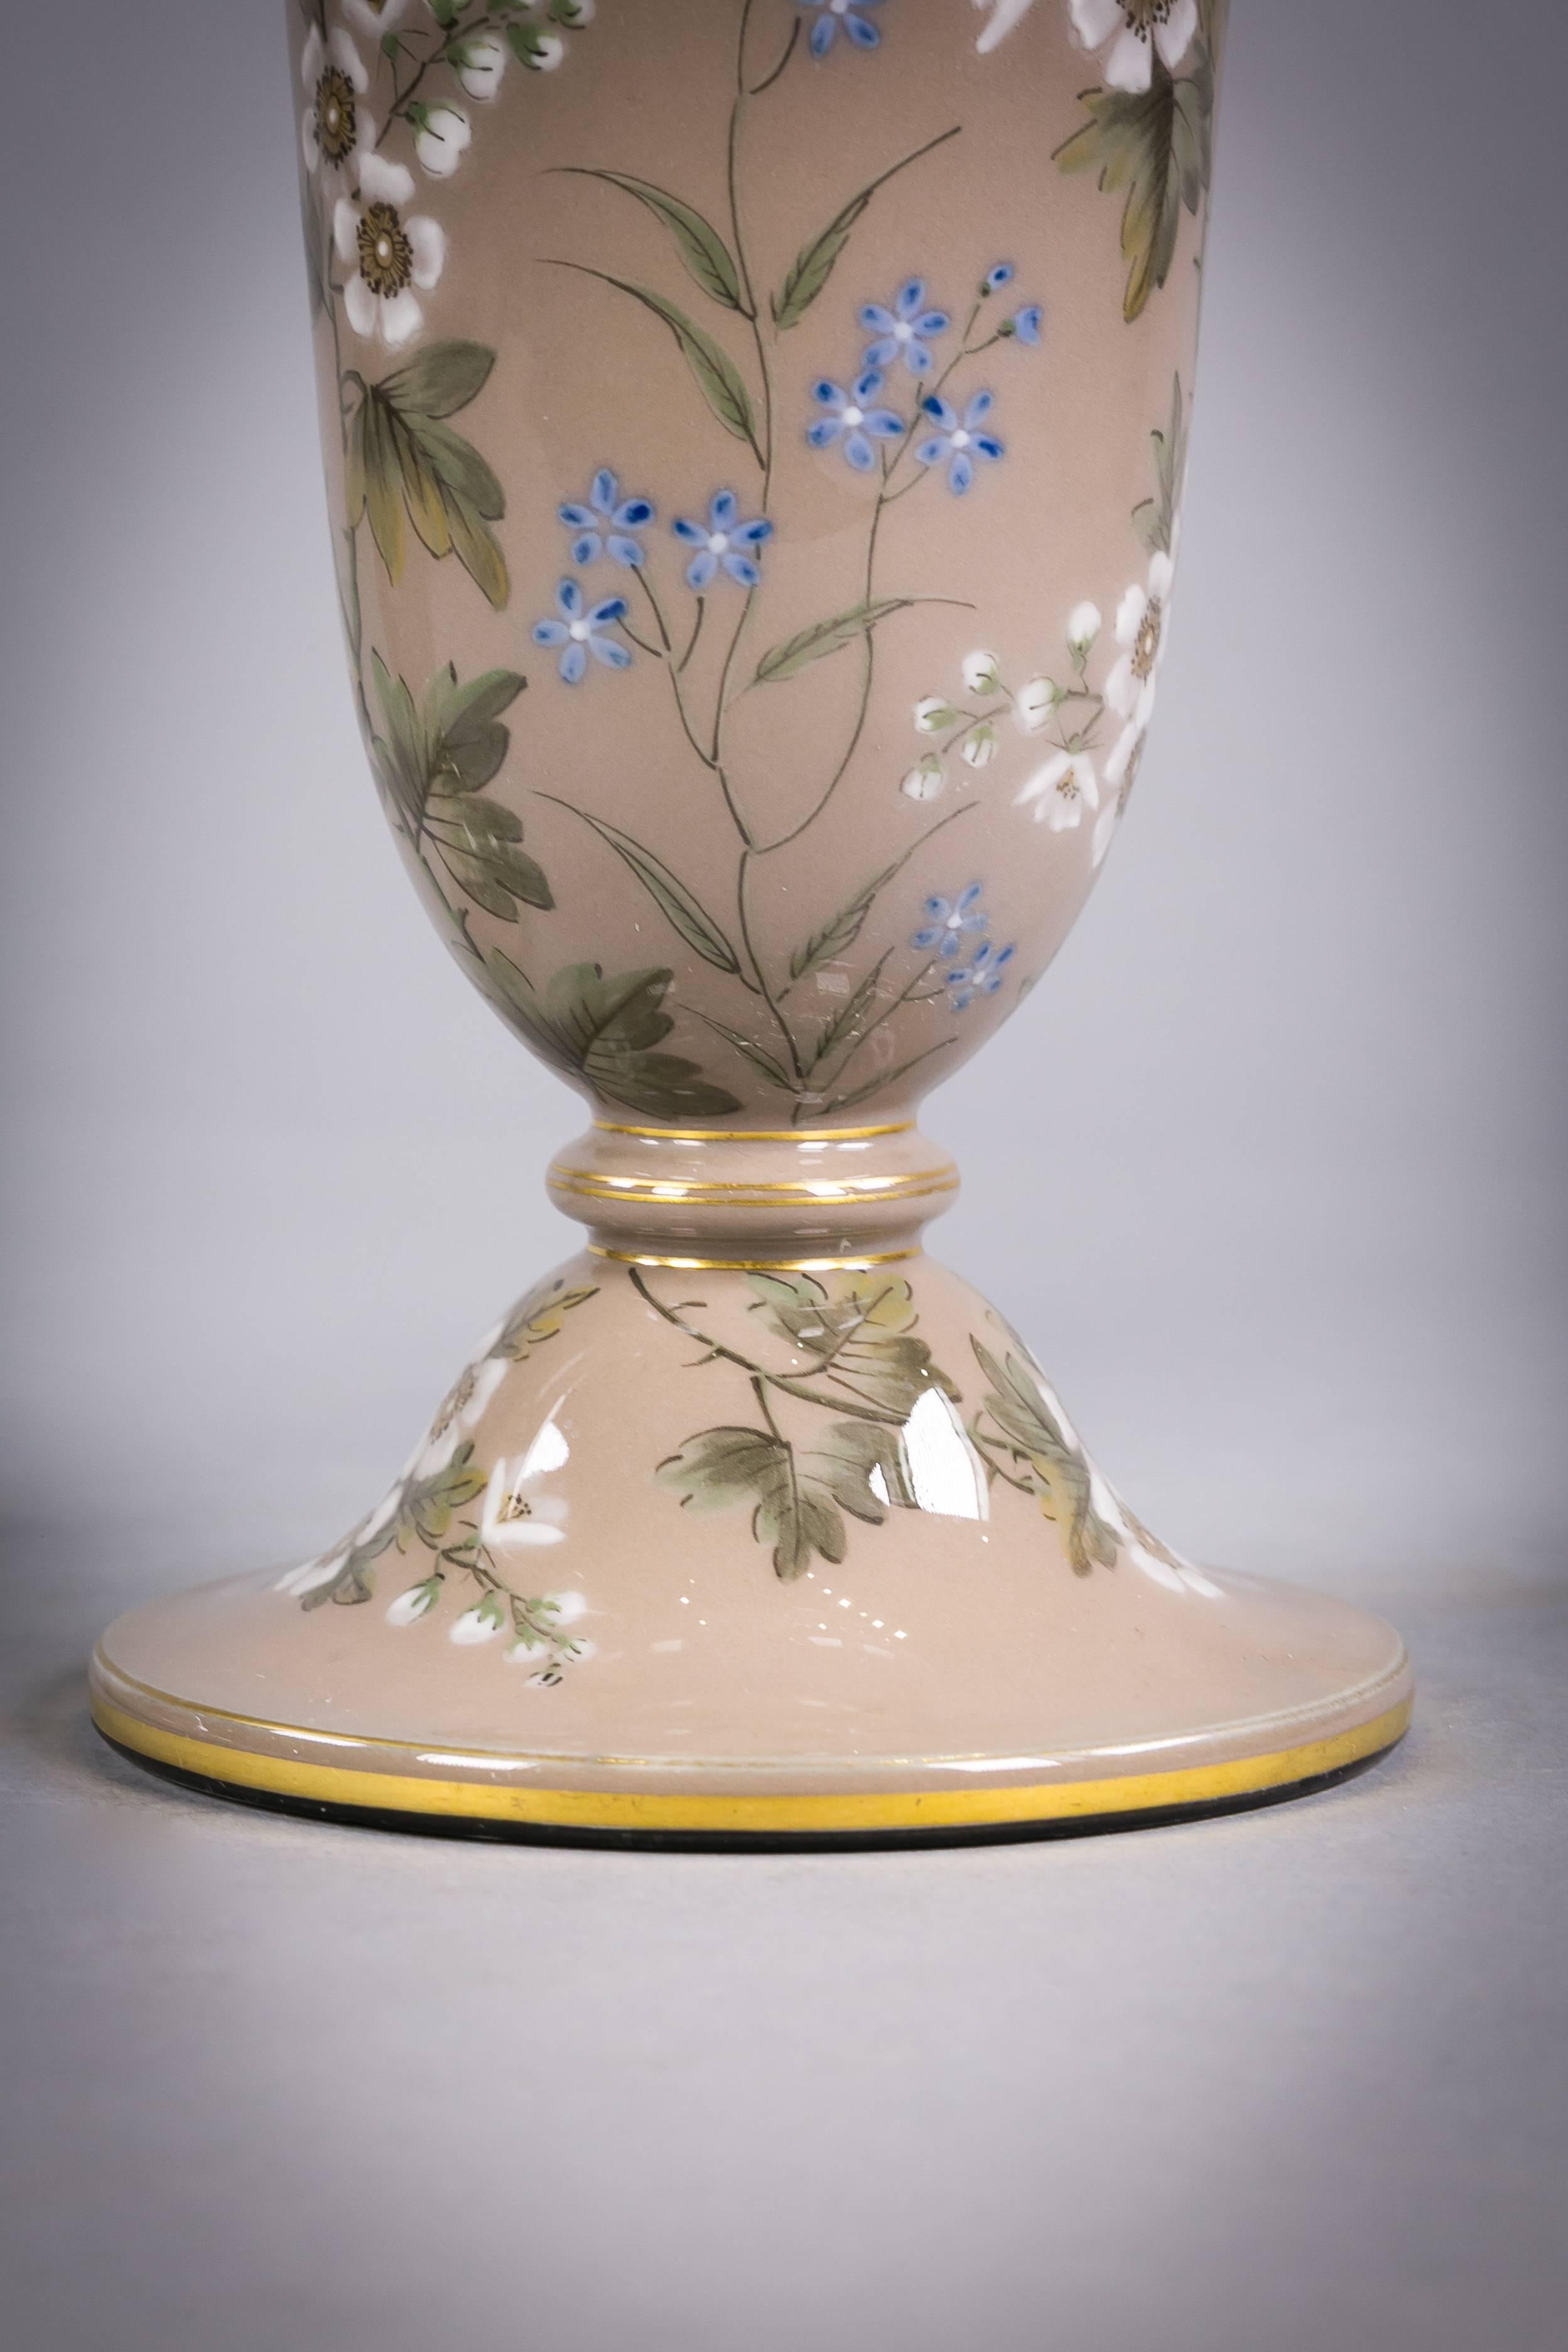 Pair of French porcelain Pâte-sur-Pâte vases, circa 1880.